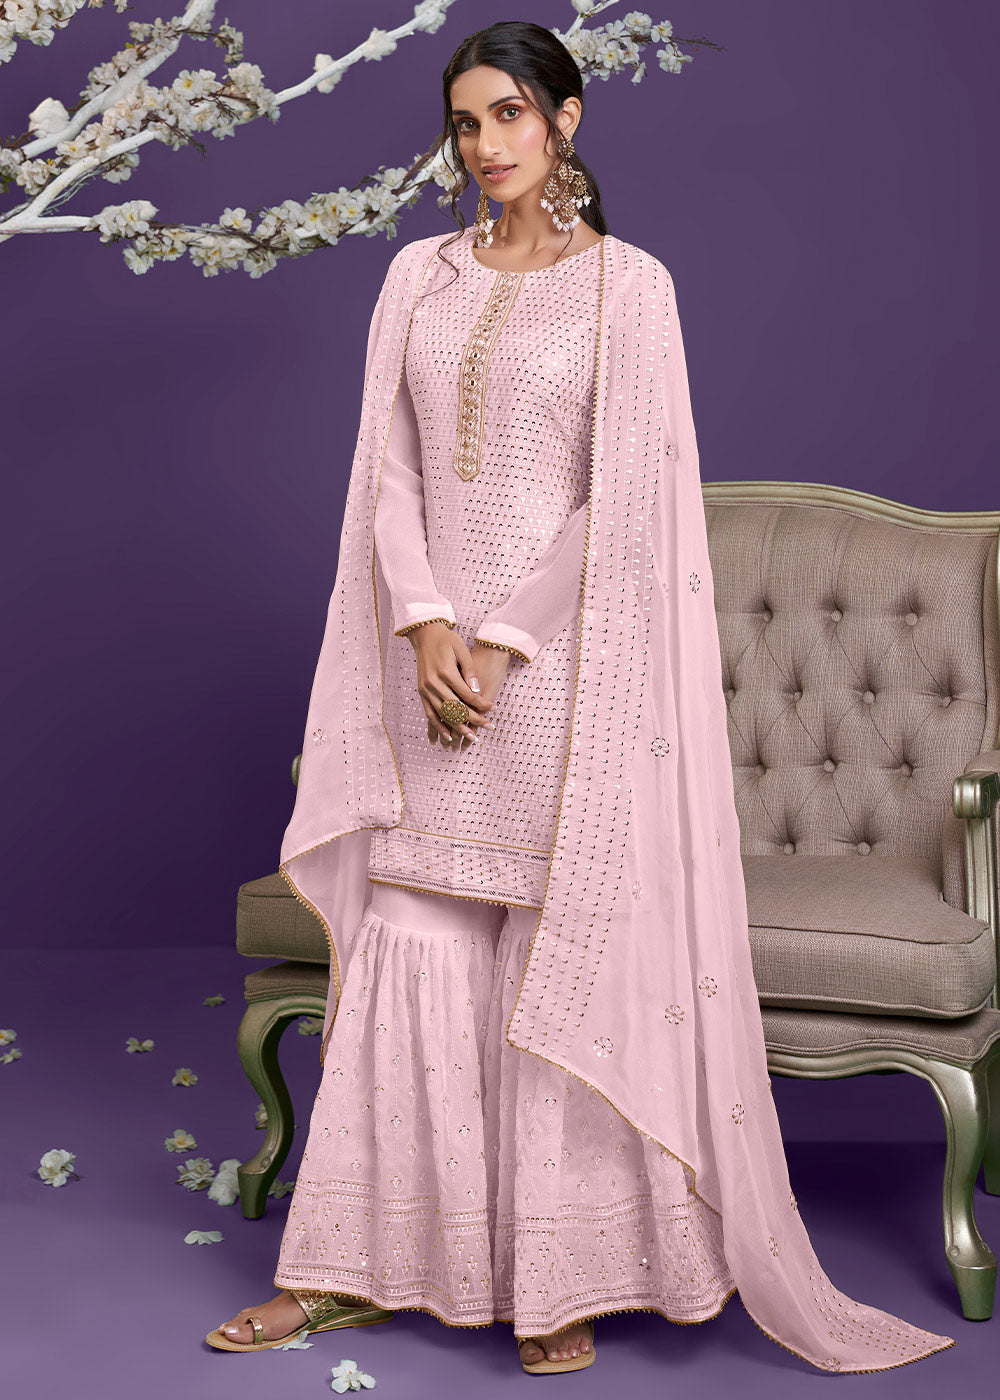 Lemonade Pink Georgette Sharara Suit with Thread, Sequins & Khatli work